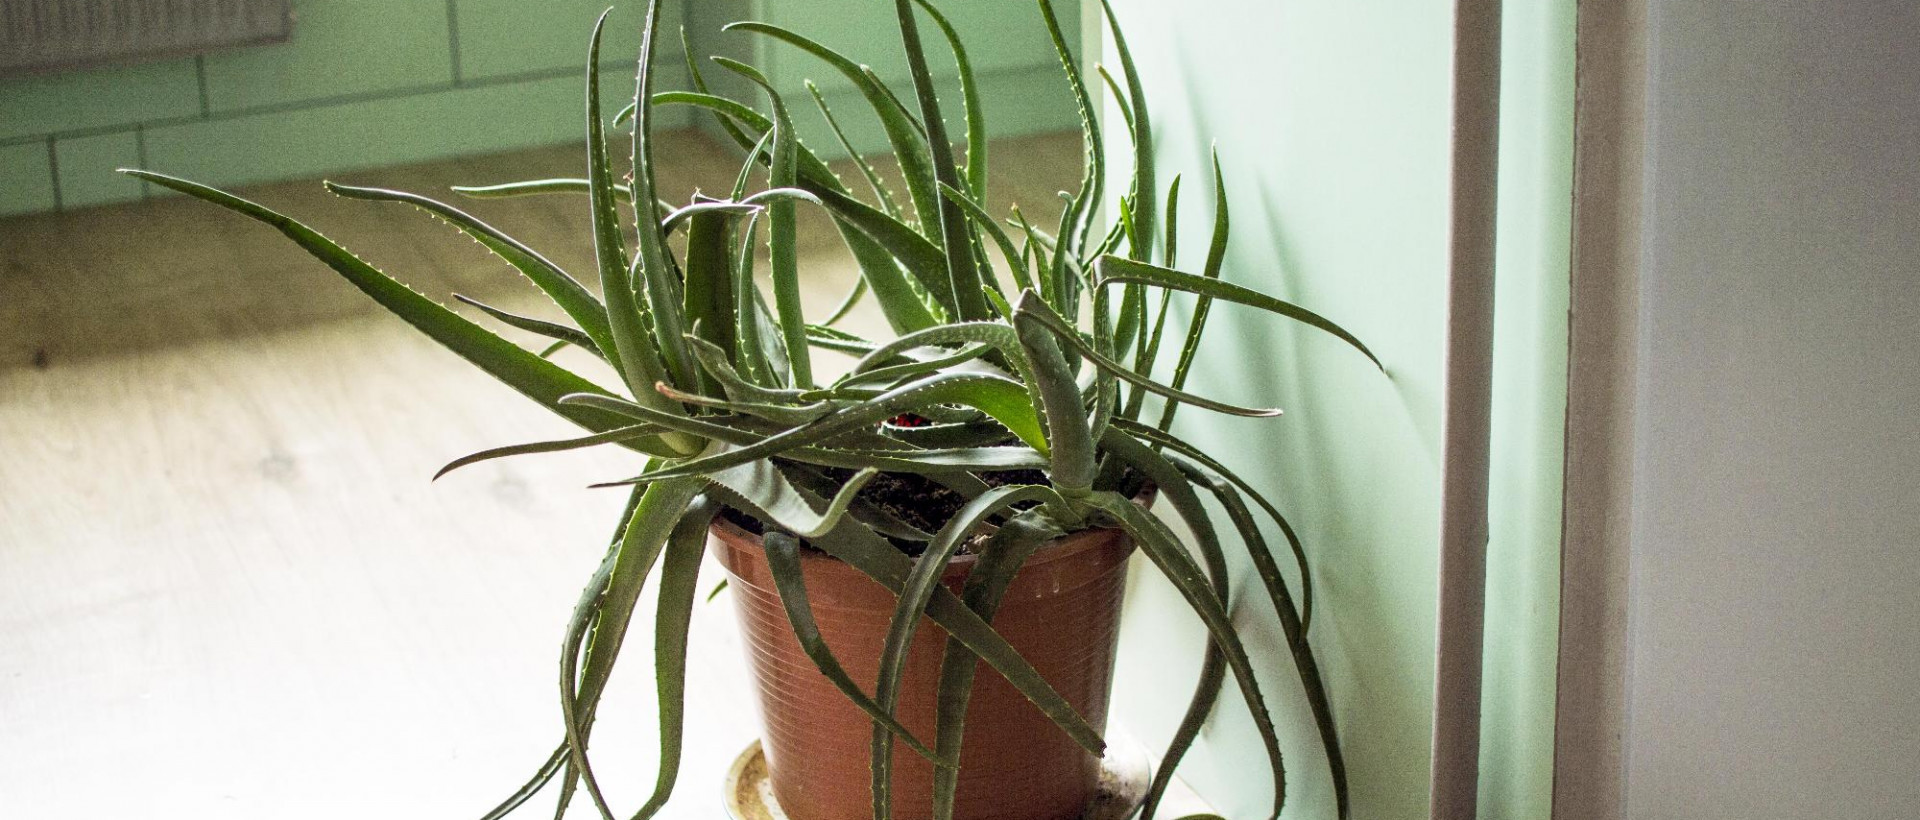 Szívós és szép szobanövények: aloe vera